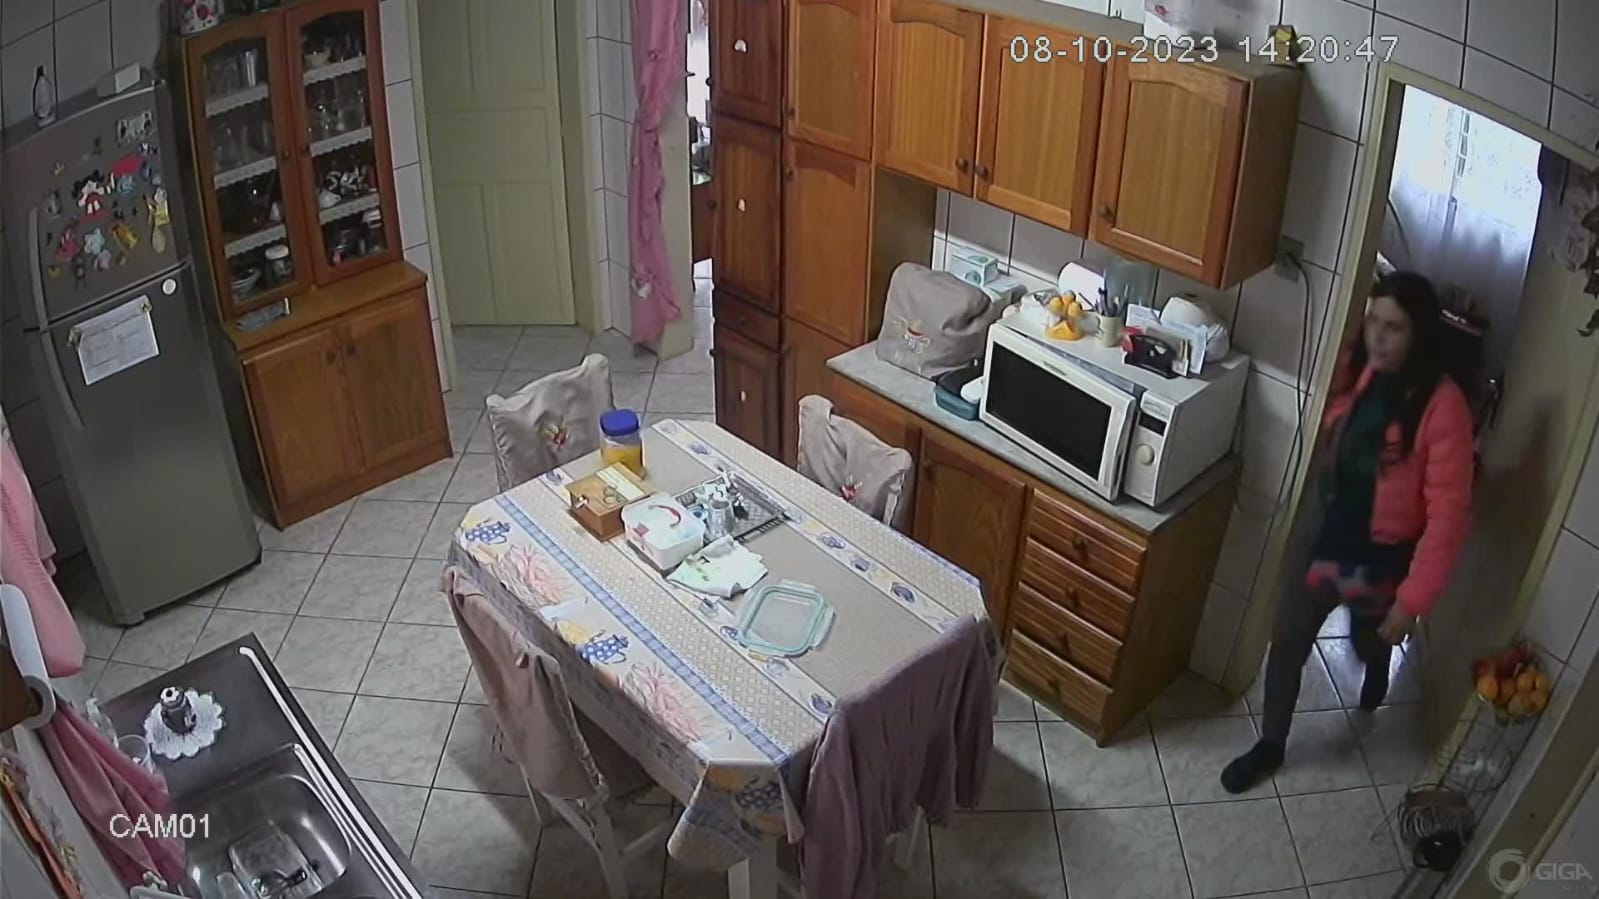 Em Gravataí, mulher usa desculpa para entrar nas casas e realizar furtos; veja o vídeo